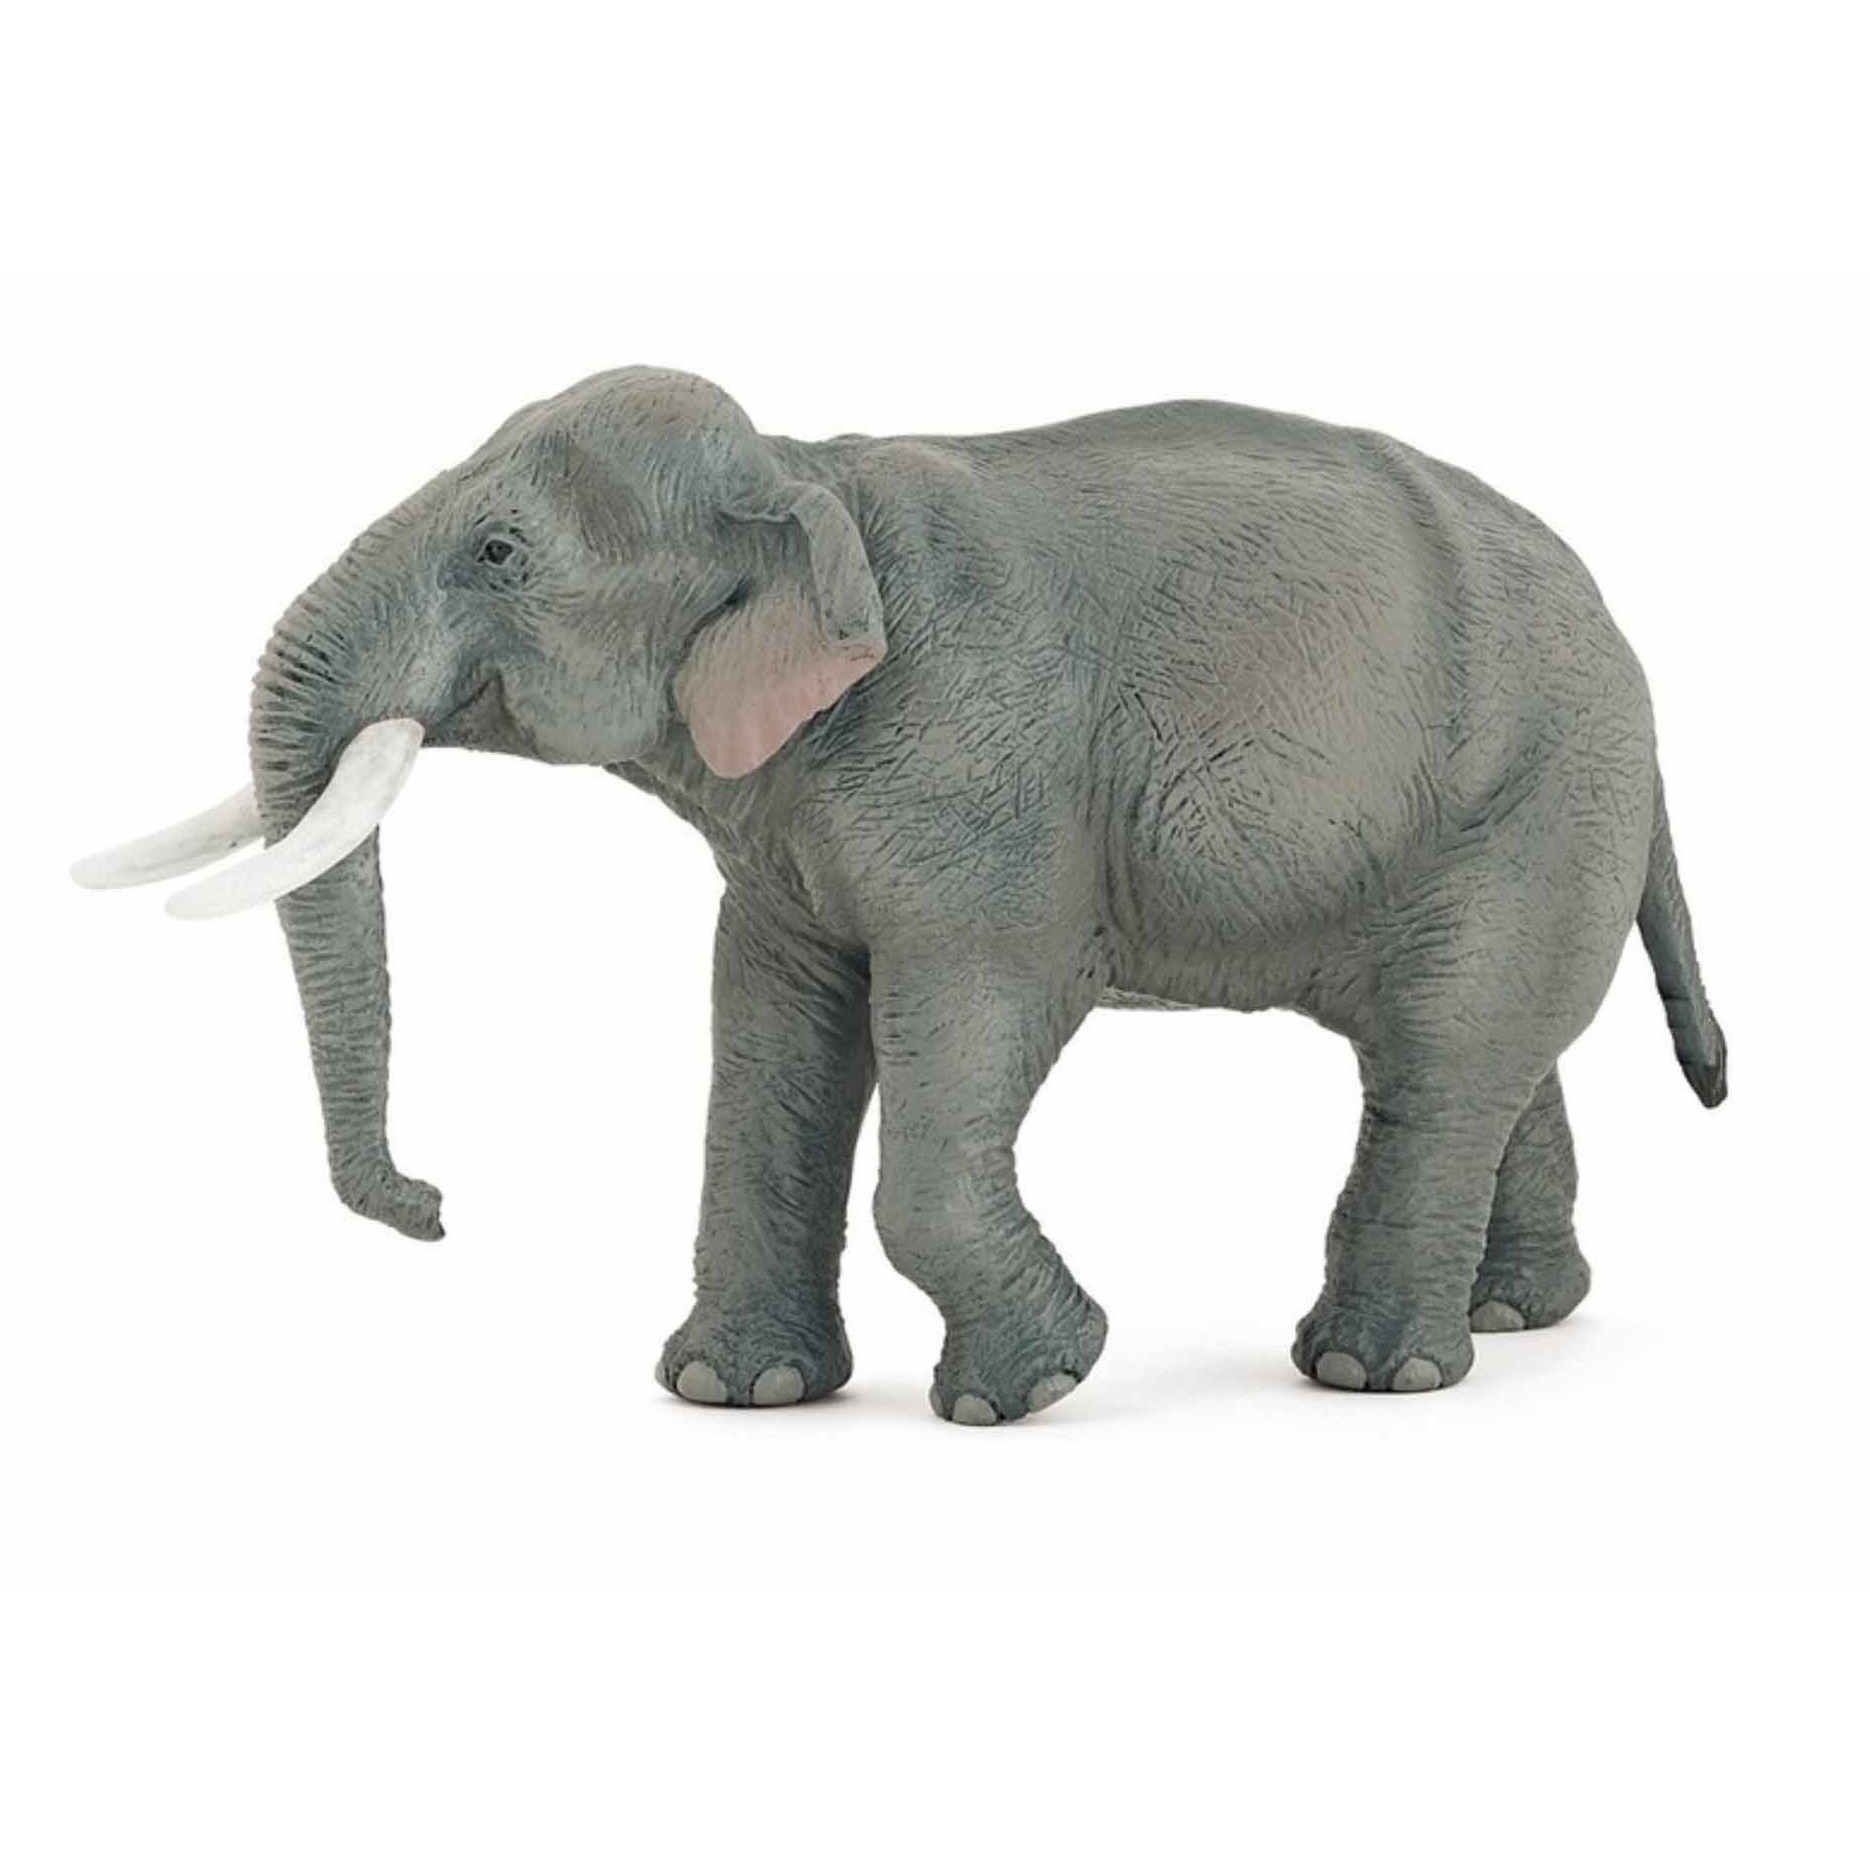 Plastic speelgoed figuur Aziatische moeder olifant 14.5 cm